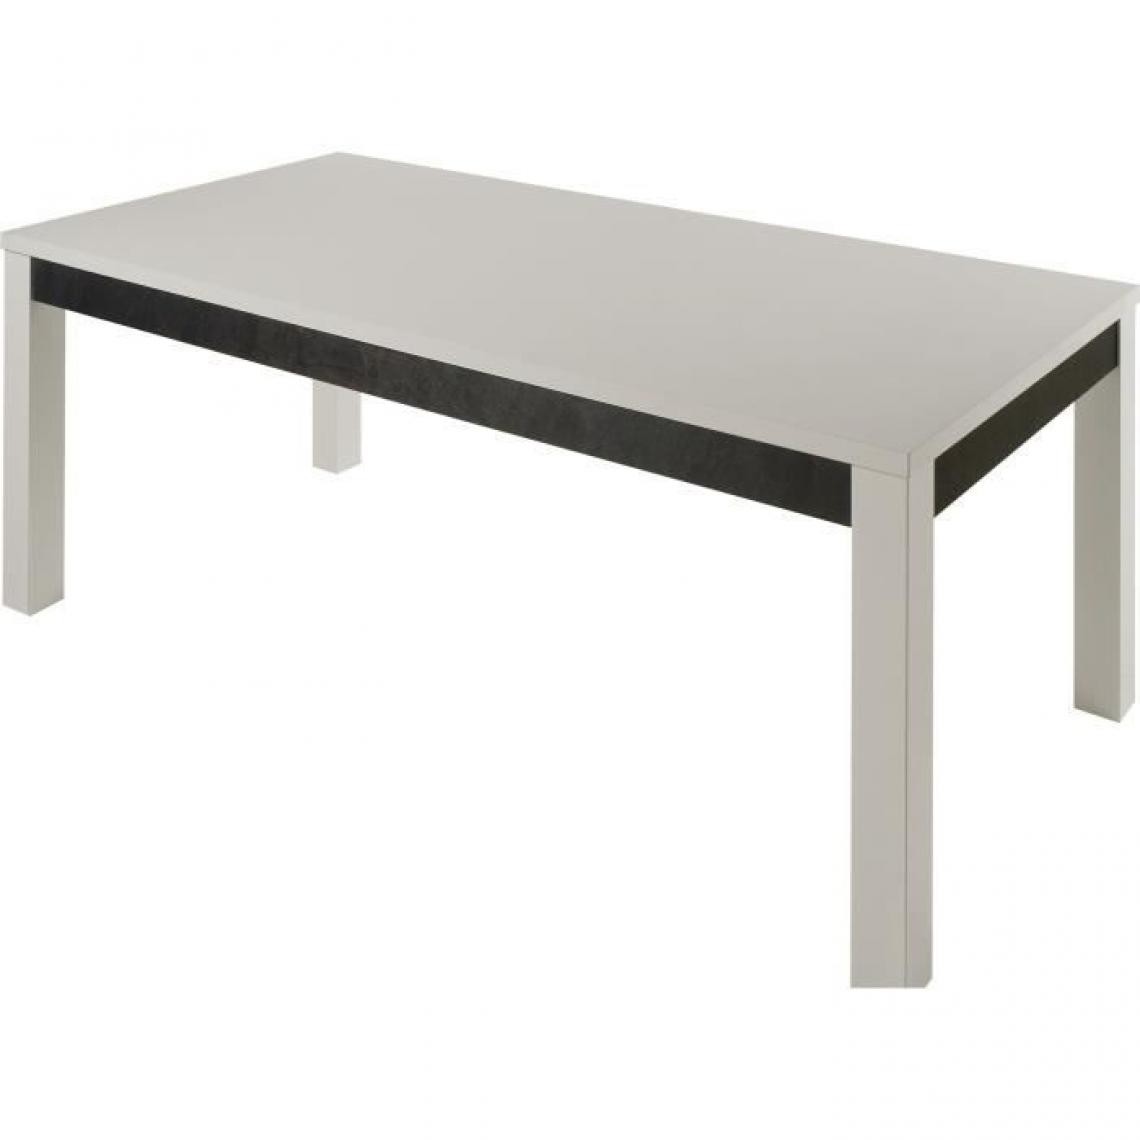 Cstore - Table rectangle L 190 cm - Structure en panneau de particule épaisseur de 18mm - Blanc et gris - Cooper - Tables à manger